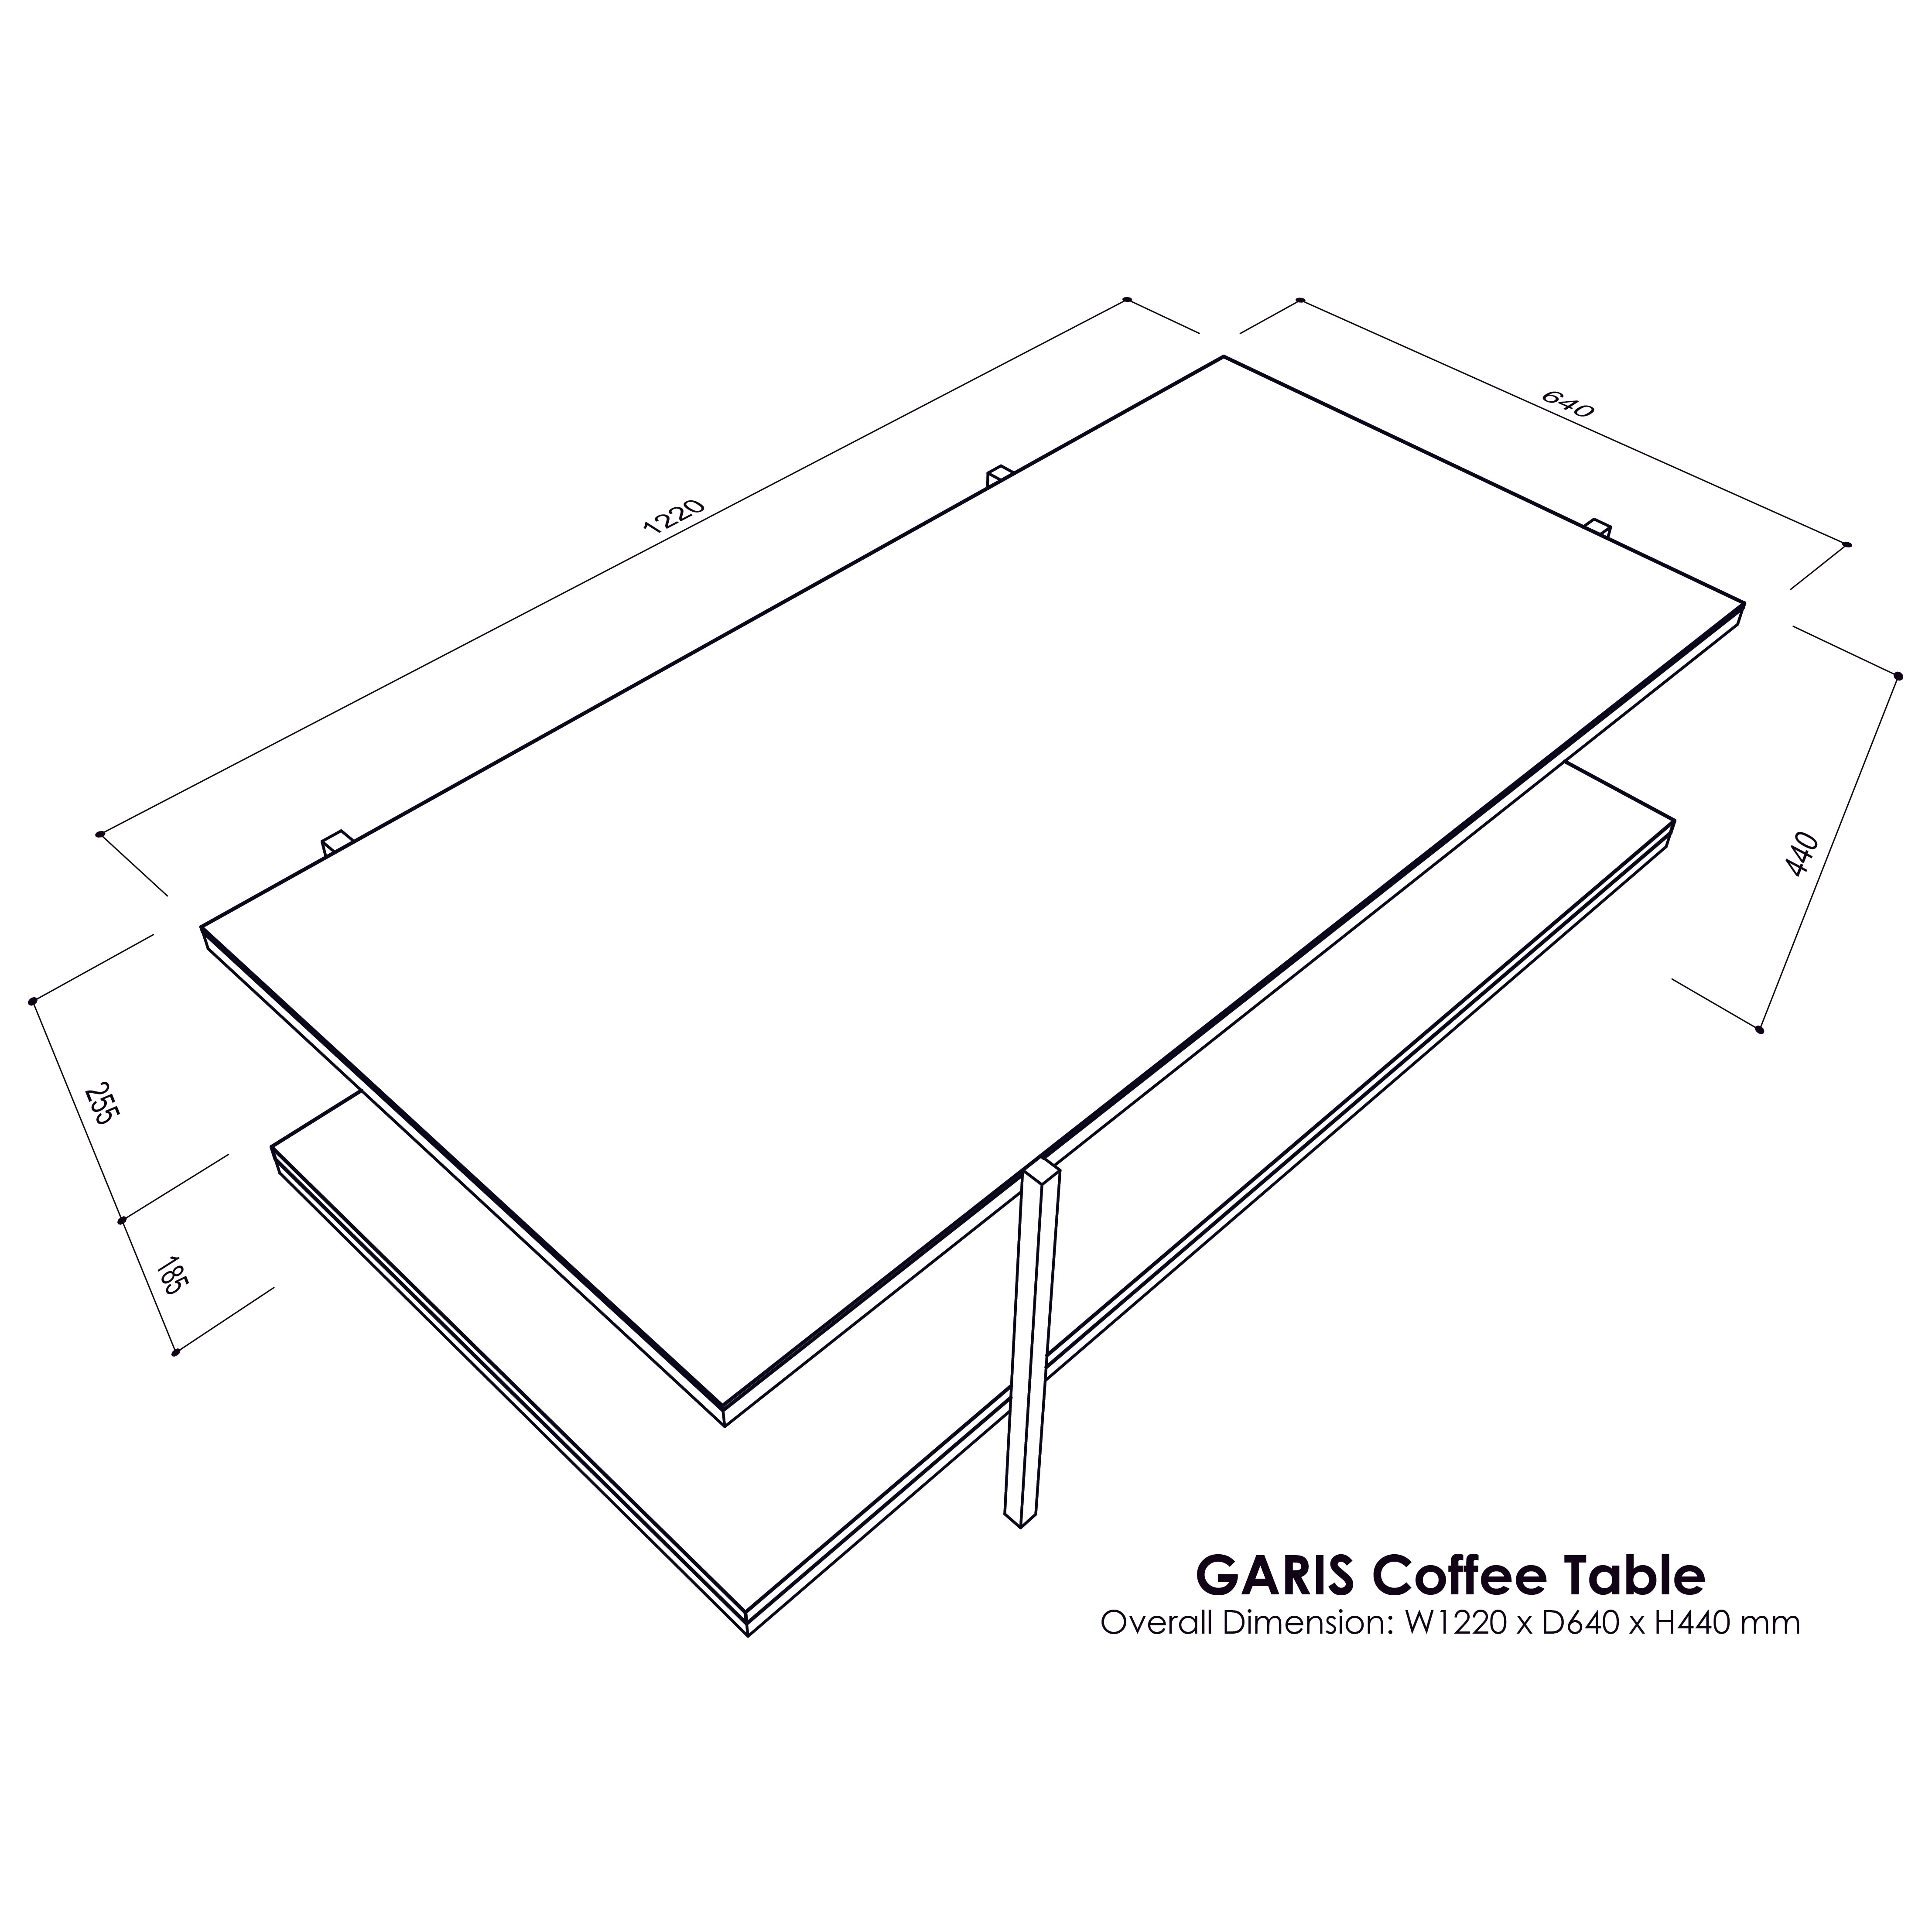 GARIS Coffee Table V2.0